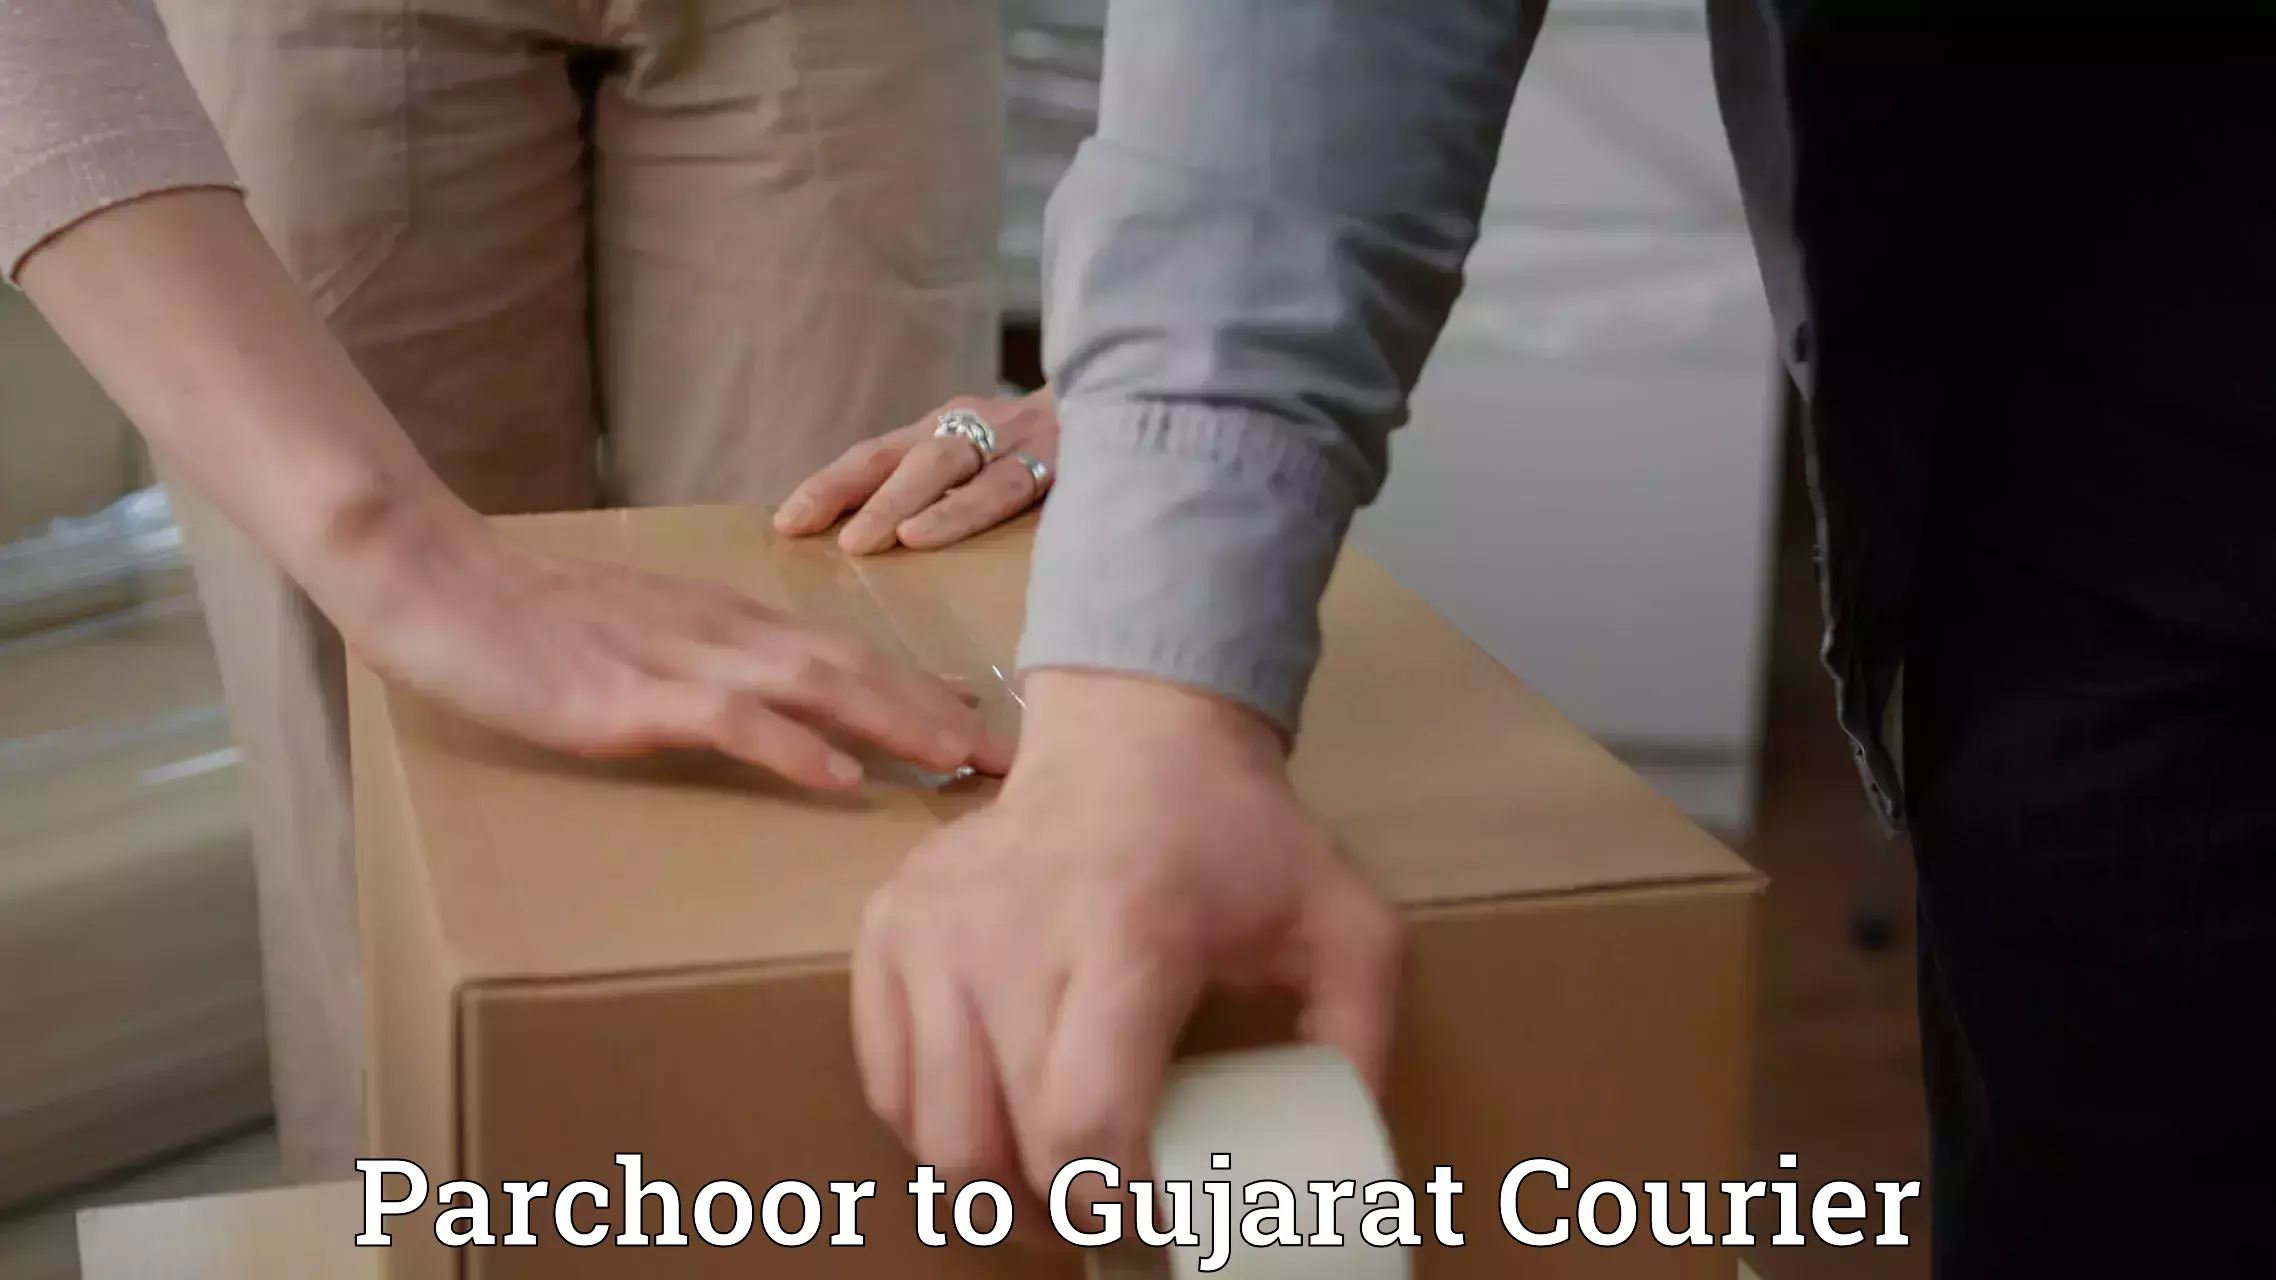 High-capacity parcel service Parchoor to Gujarat